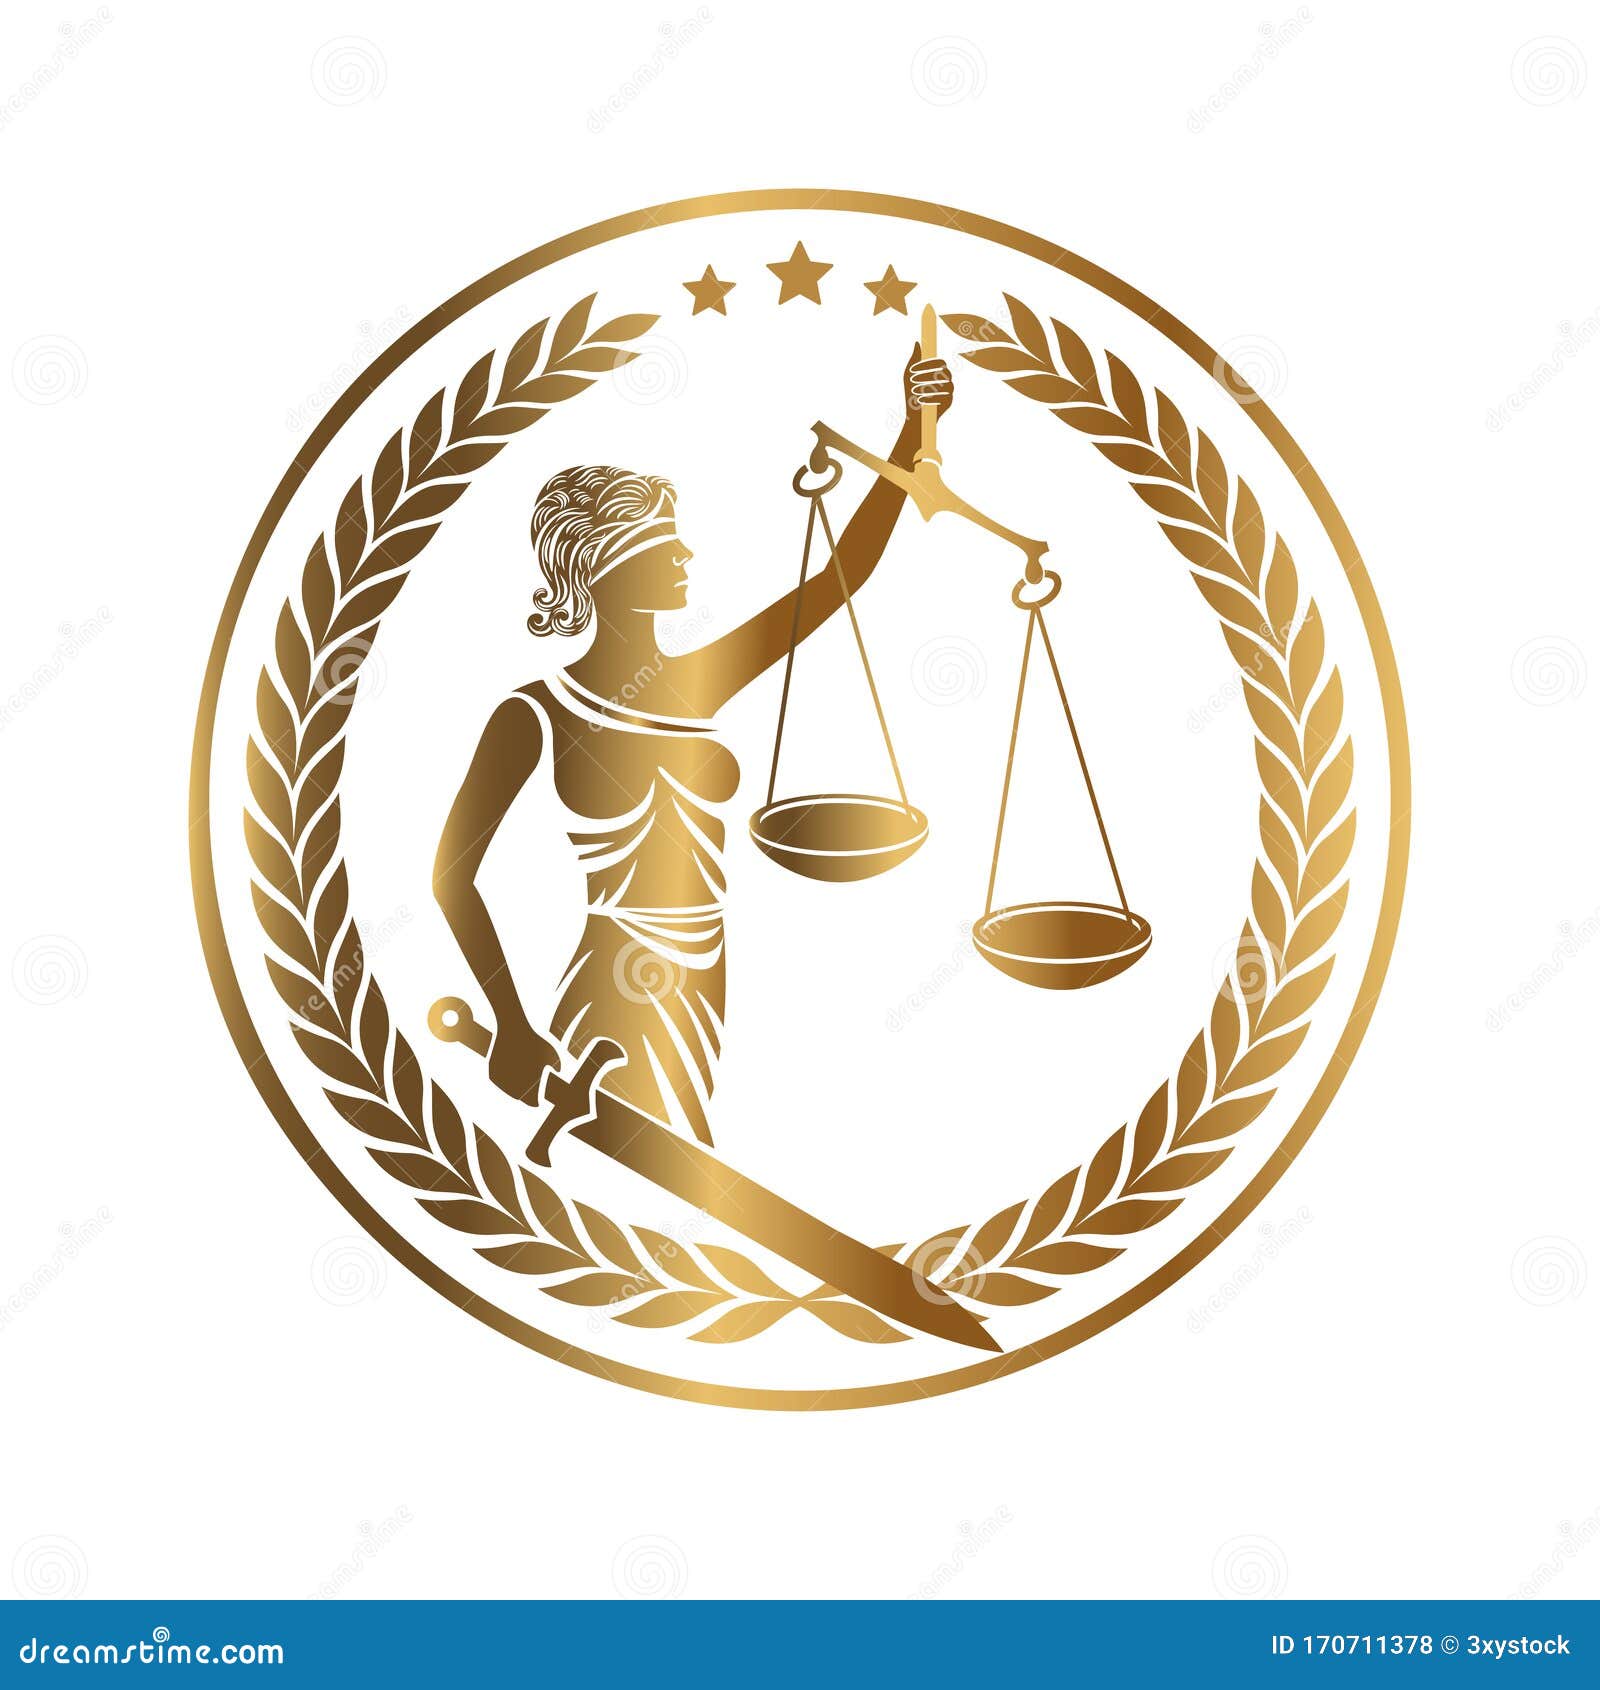 lady justice themis golden emblem